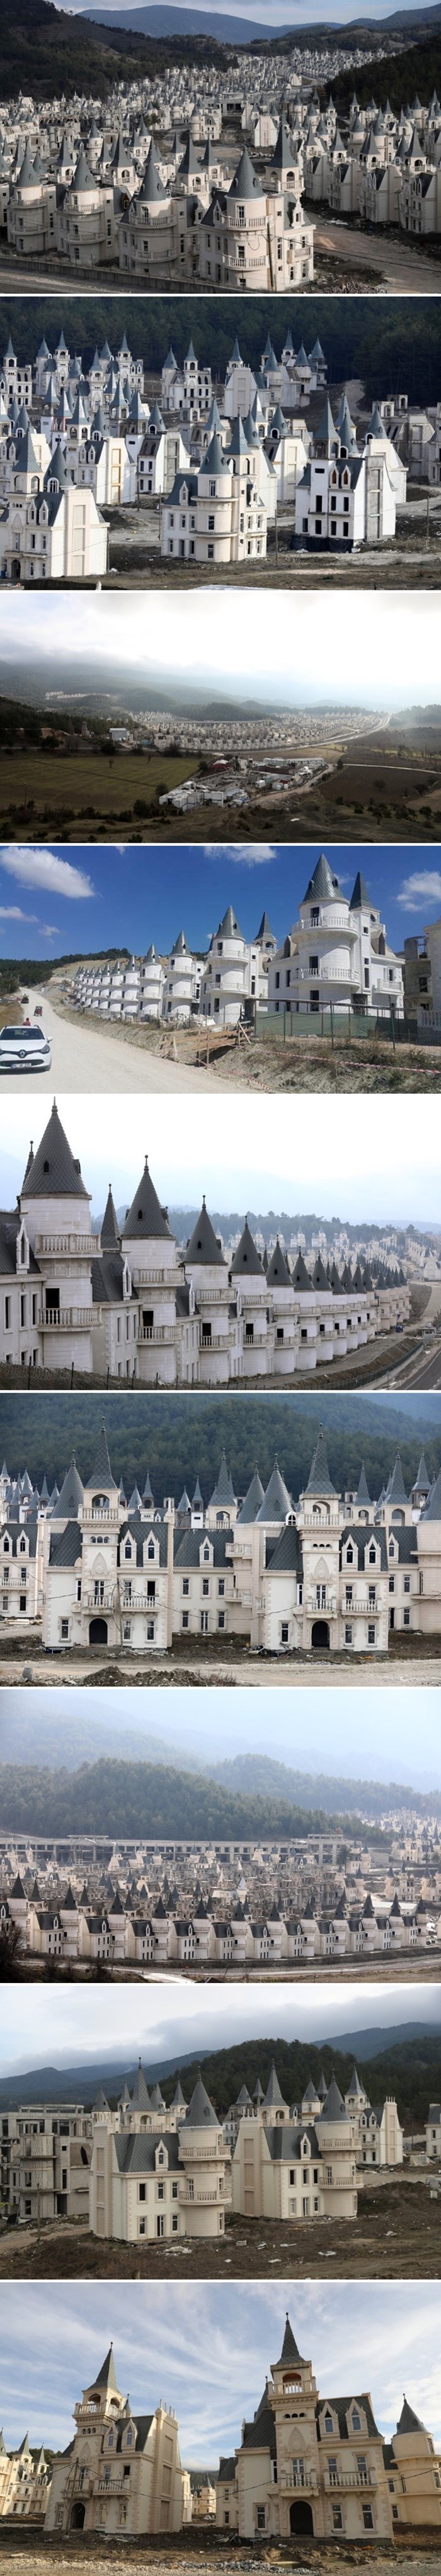 Izgradili su selo sa stotinama malih dvoraca pa primijetili problem kad je već bilo prekasno